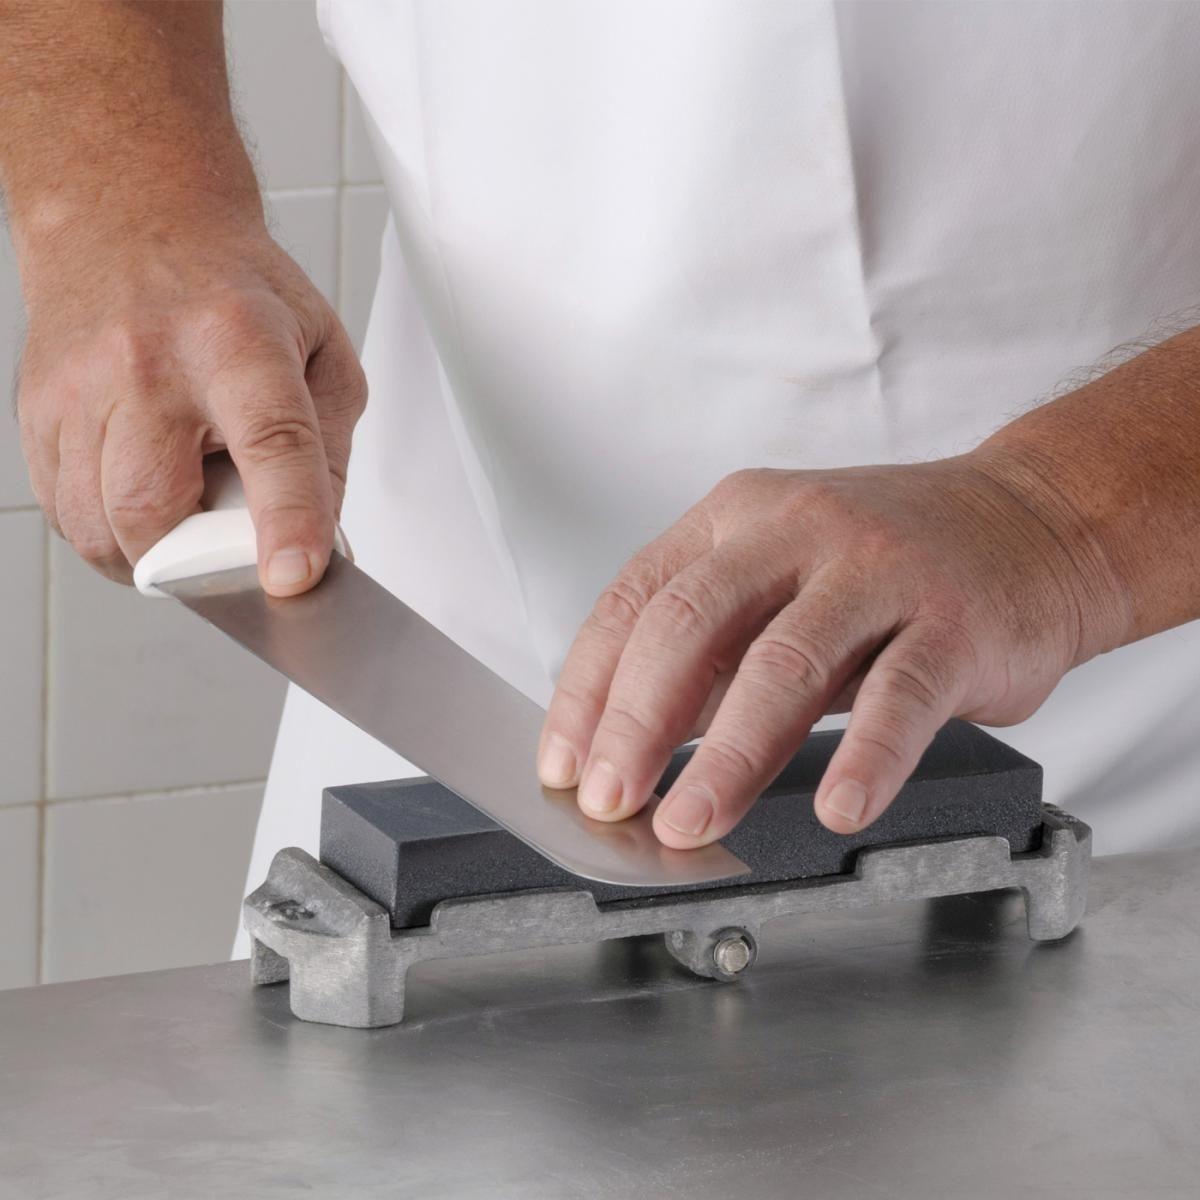 O segredo para afiar facas com segurança foi revelado! Saiba agora mesmo como fazer